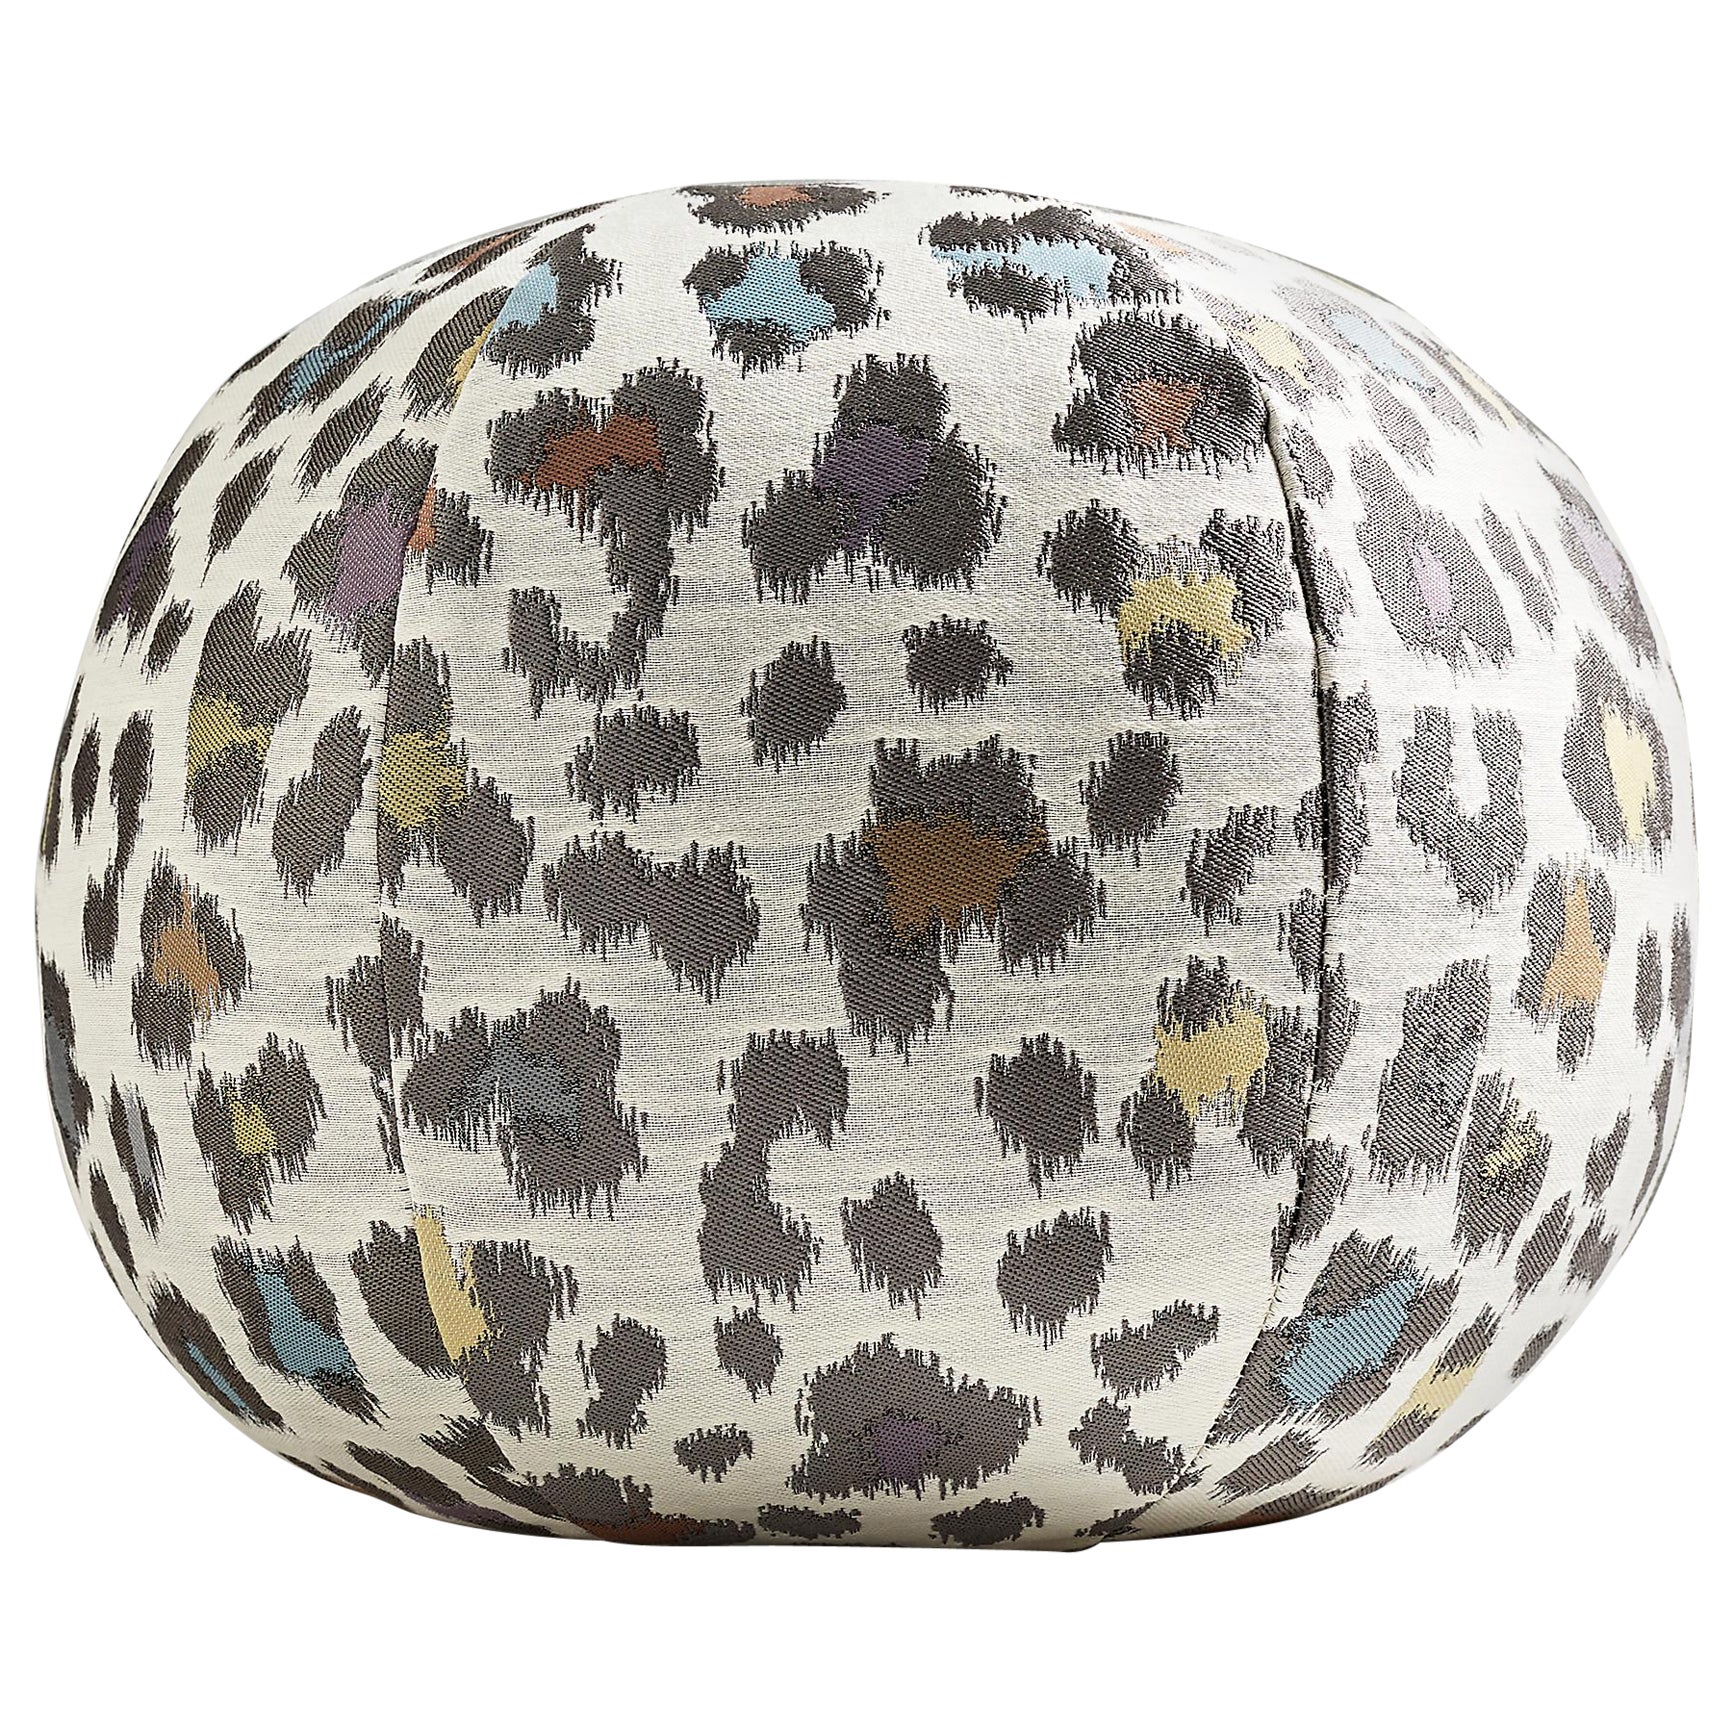 Rosette Woven Sphere Pillow For Sale